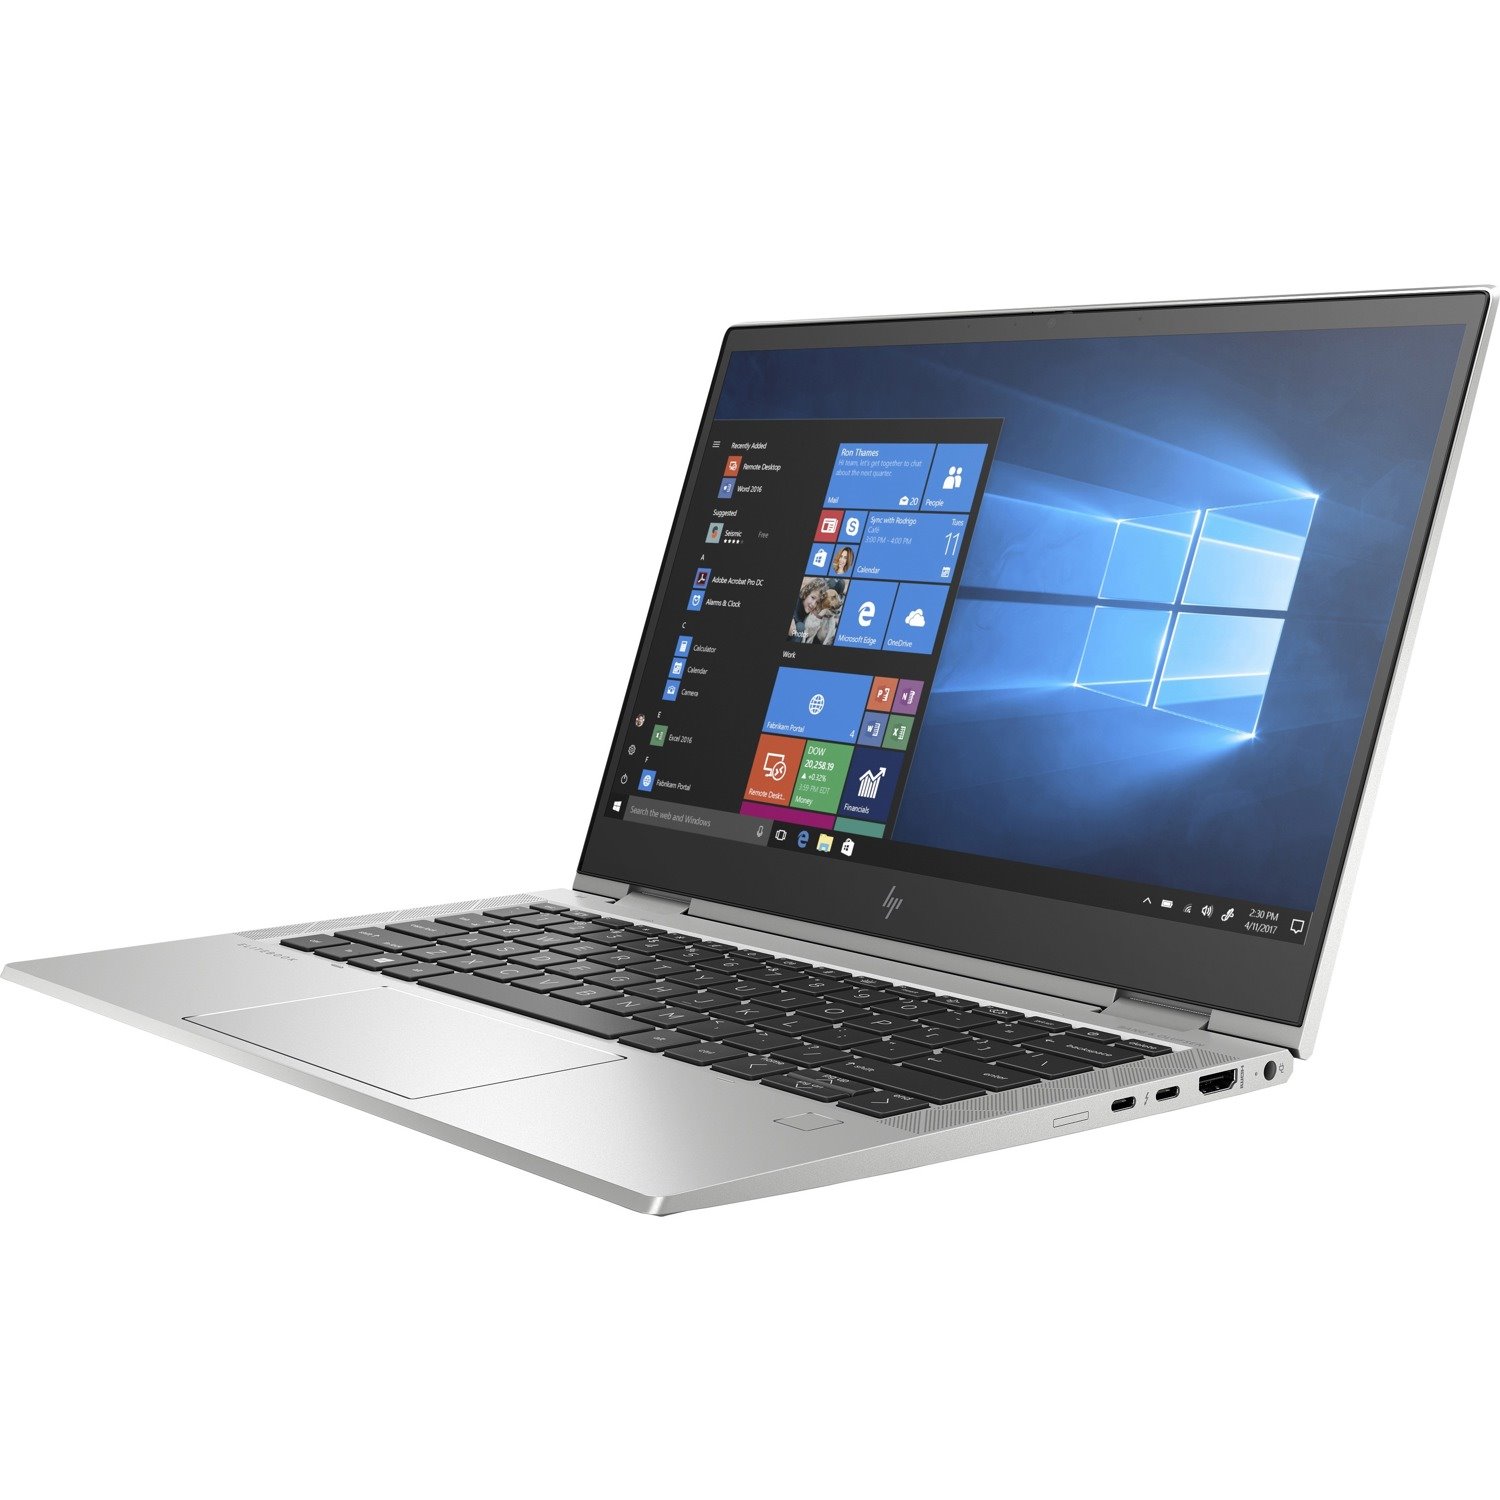 HP EliteBook x360 830 G7 13.3" Touchscreen Convertible 2 in 1 Notebook - Full HD - 1920 x 1080 - Intel Core i7 10th Gen i7-10610U Quad-core (4 Core) 1.80 GHz - 16 GB Total RAM - 256 GB SSD